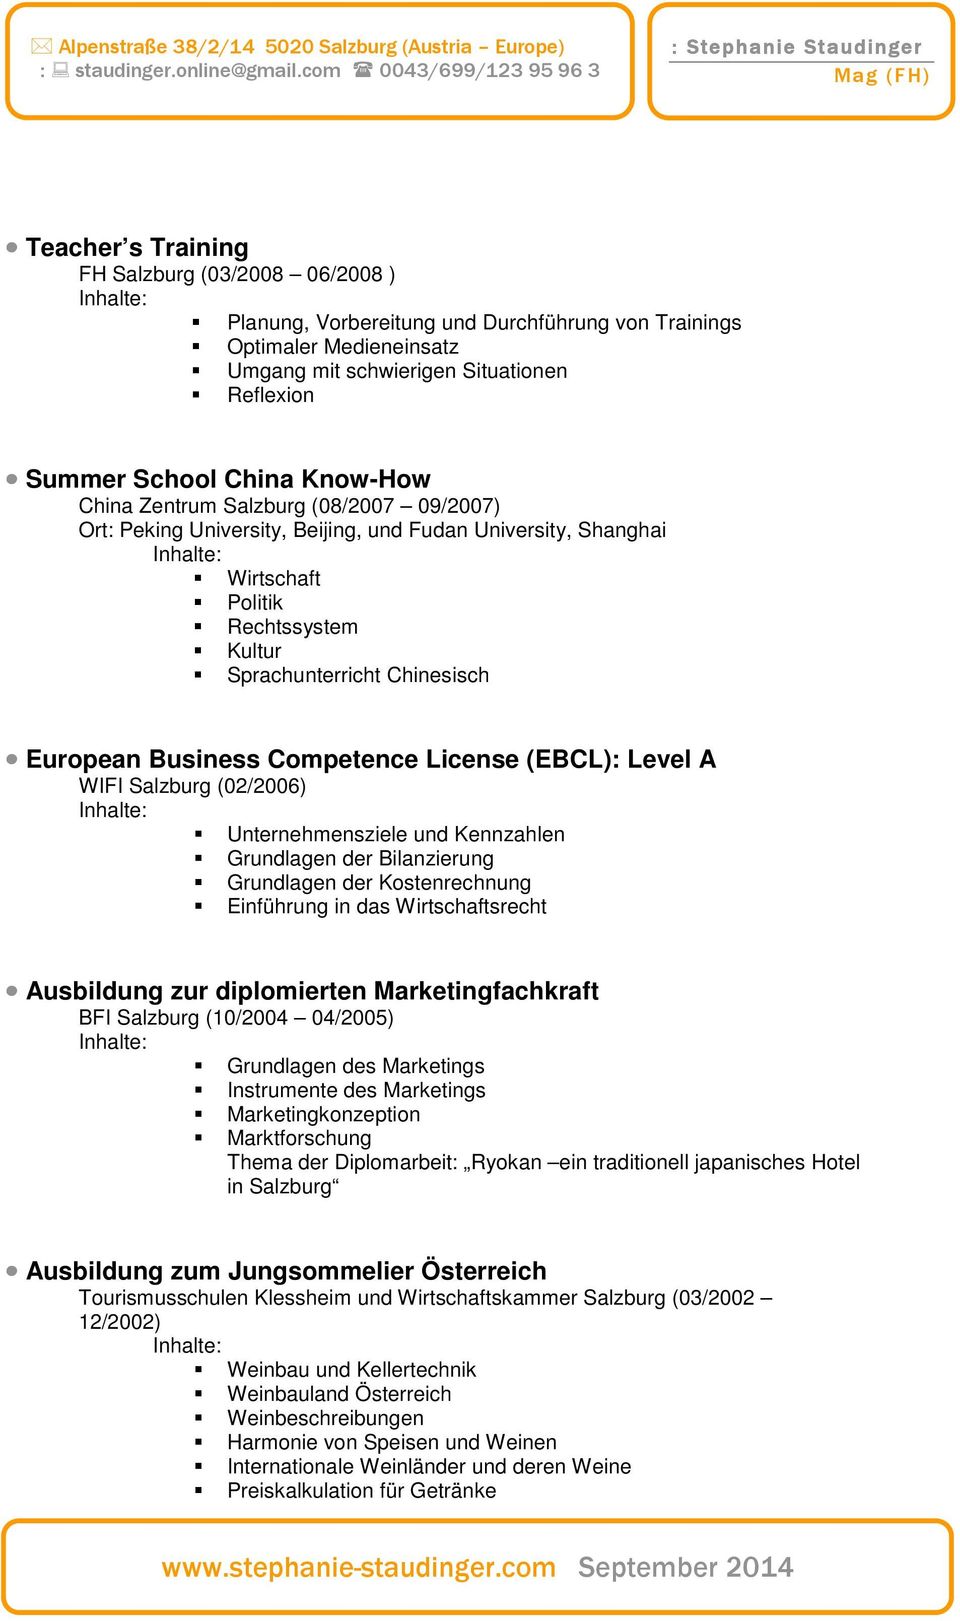 Competence License (EBCL): Level A WIFI Salzburg (02/2006) Unternehmensziele und Kennzahlen Grundlagen der Bilanzierung Grundlagen der Kostenrechnung Einführung in das Wirtschaftsrecht Ausbildung zur